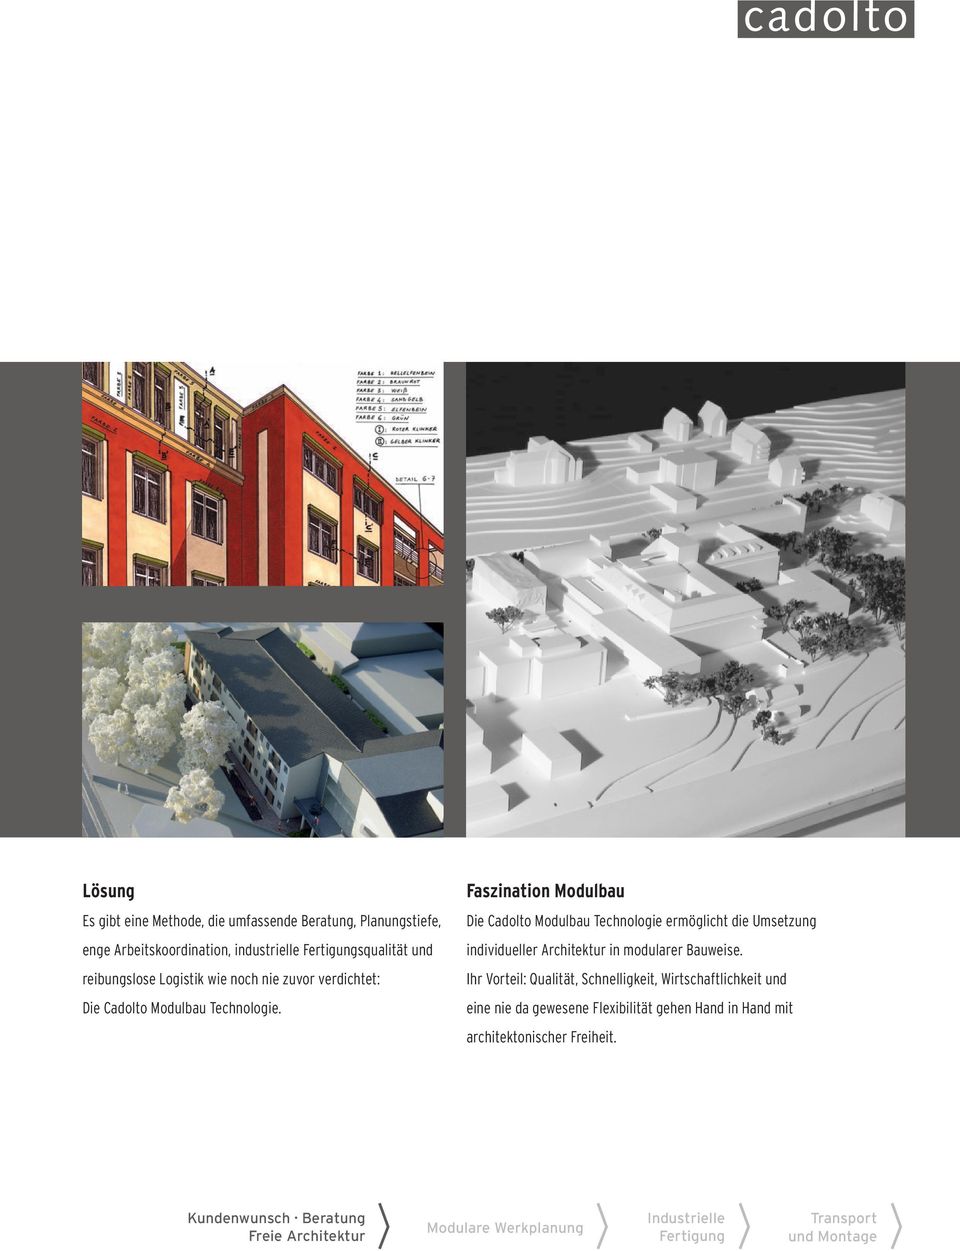 Die Cadolto Modulbau Technologie ermöglicht die Umsetzung individueller Architektur in modularer Bauweise.